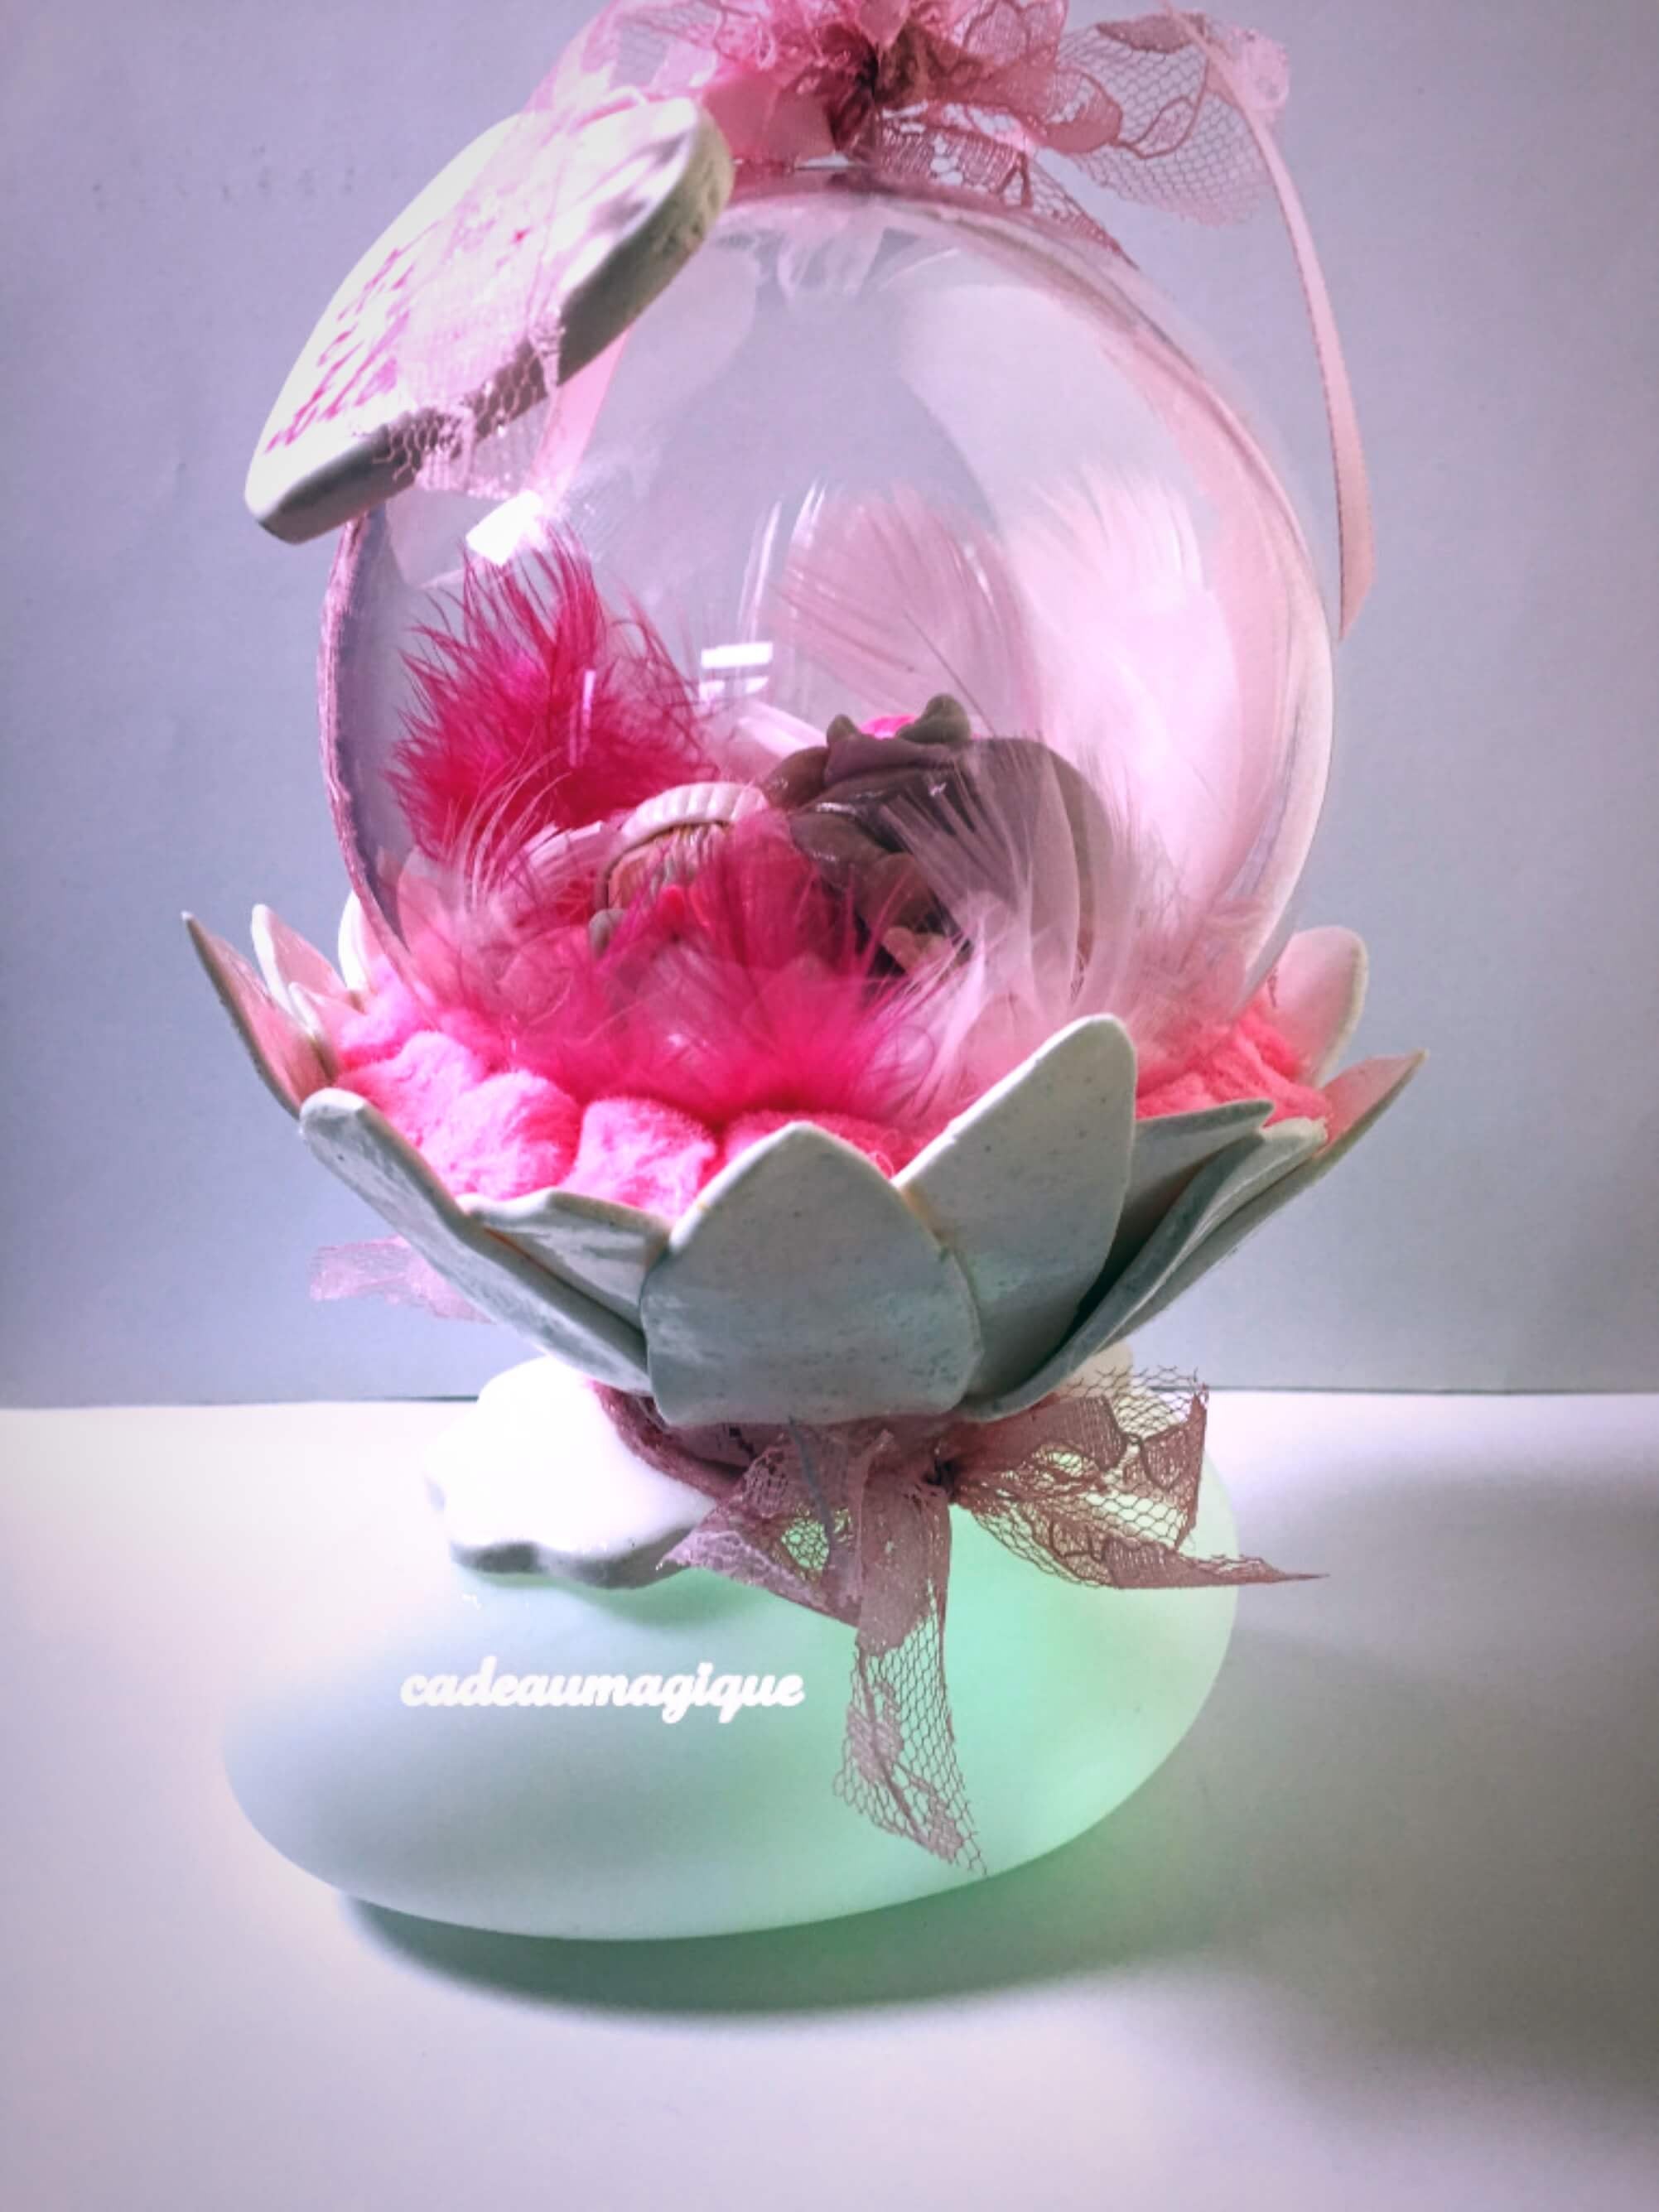 Veilleuse Cadeau Bébé personnalisé Rose corail – Les griottes